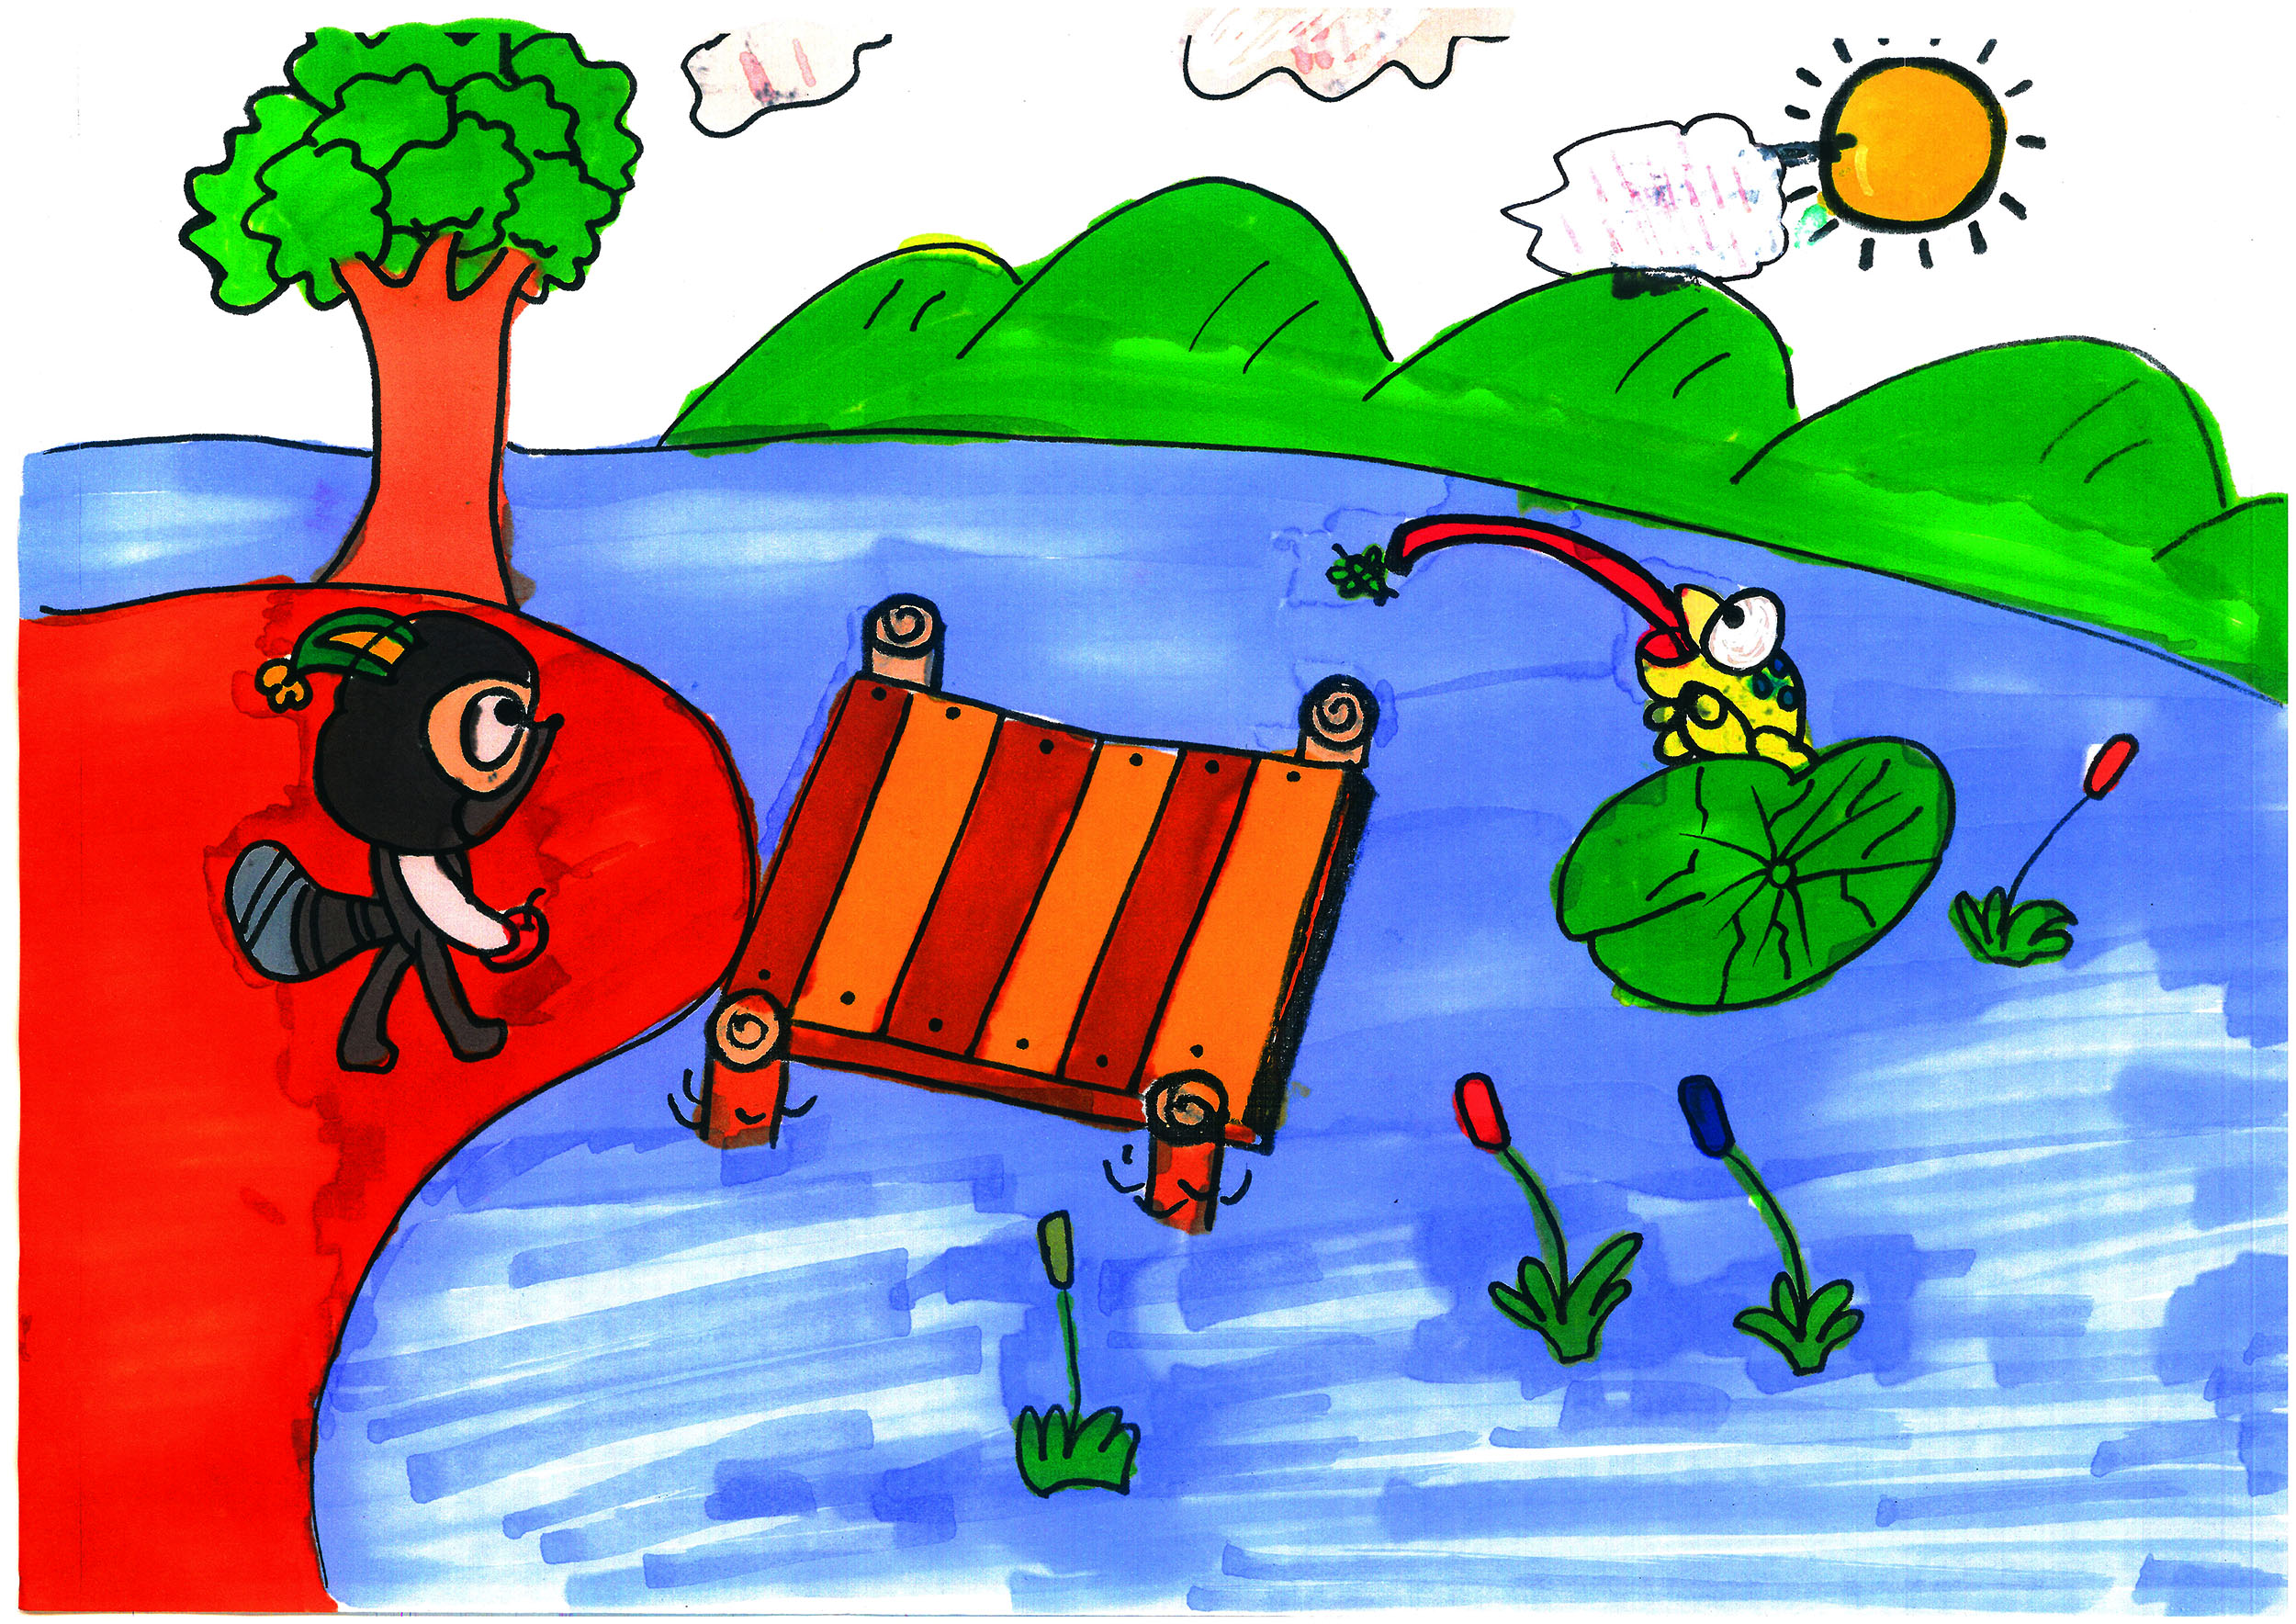 儿童画可打印美术涂色画图片 简单漂亮小青蛙的故事绘画作品大全